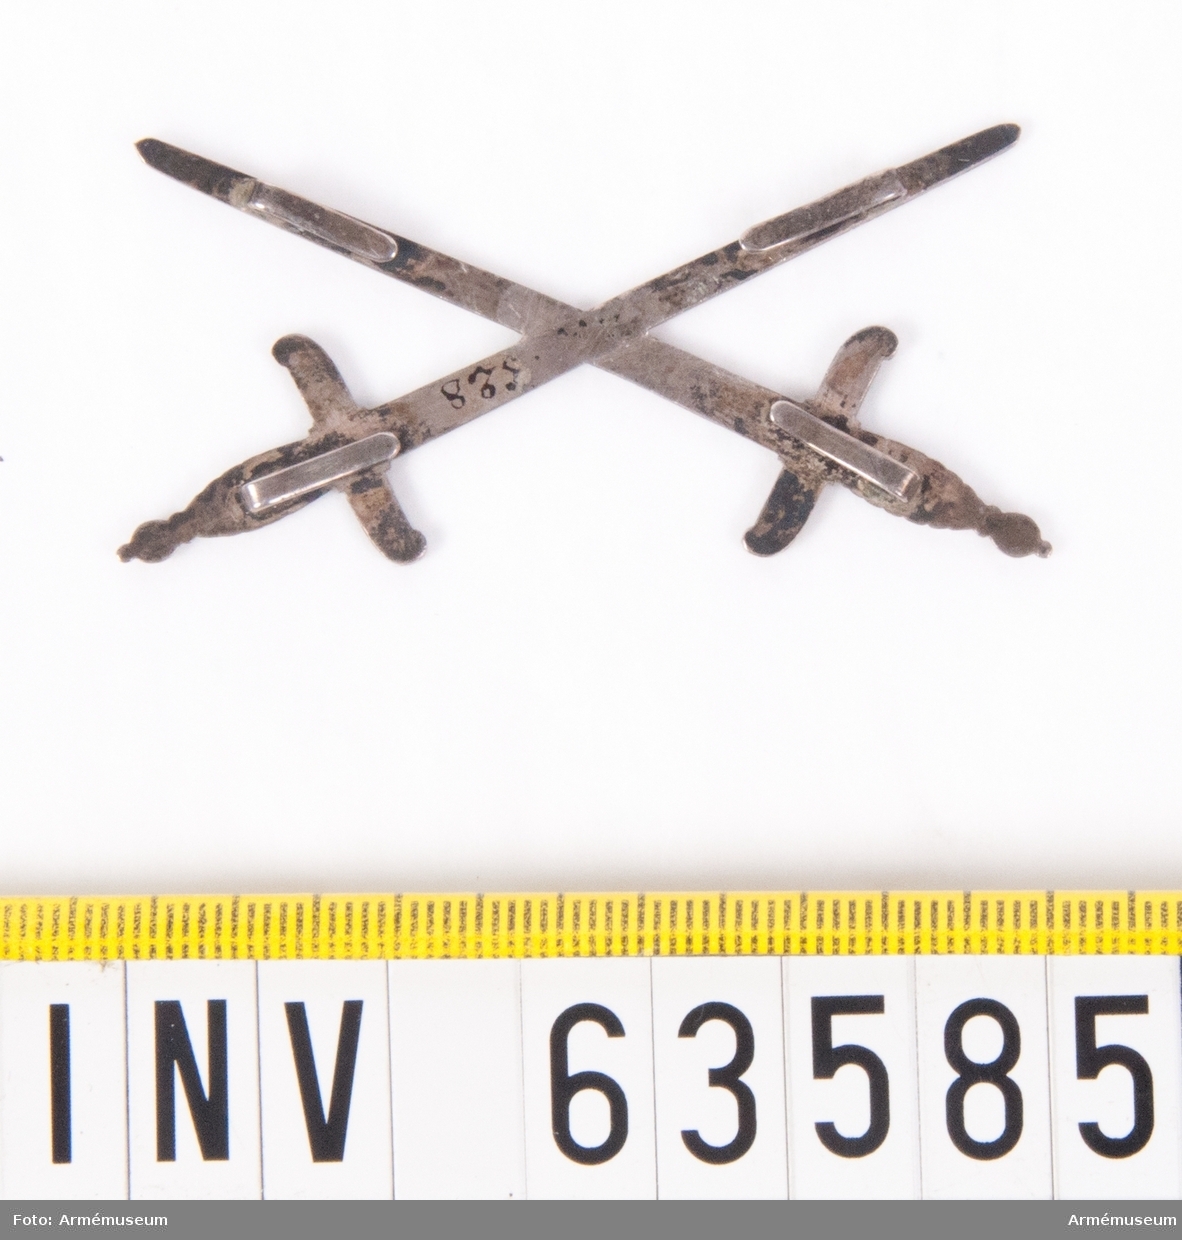 Grupp M II.
Två korslagda svärd av silver, med fästena uppåt.
Riddare av Stora korset andra klassen.